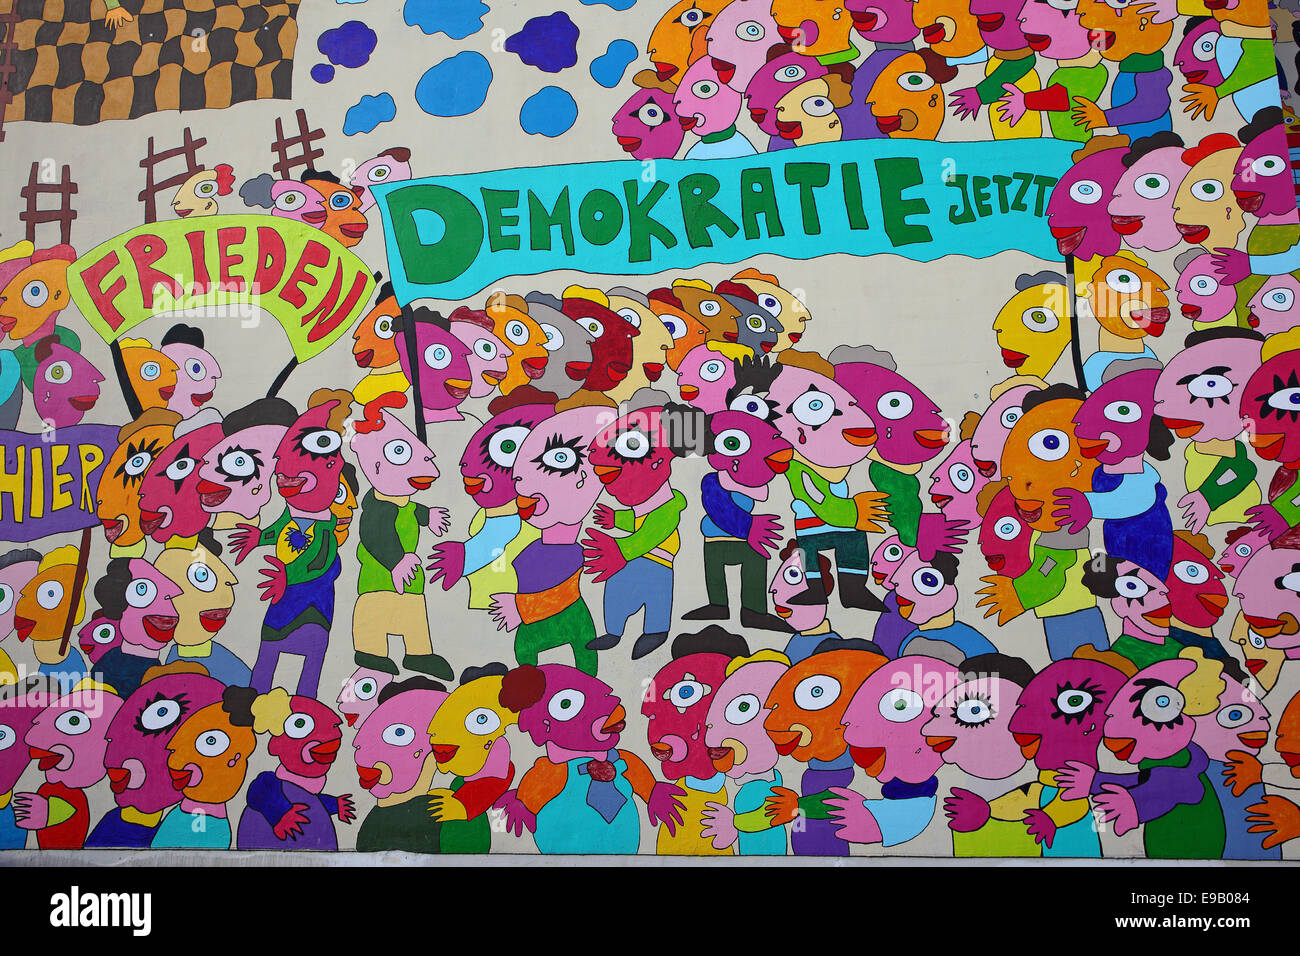 Bunte Wandgemälde mit den Worten "Frieden" und "Demokratie Jetzt", Deutsch für "Frieden" und "Demokratie jetzt" an der Wand von der Stockfoto